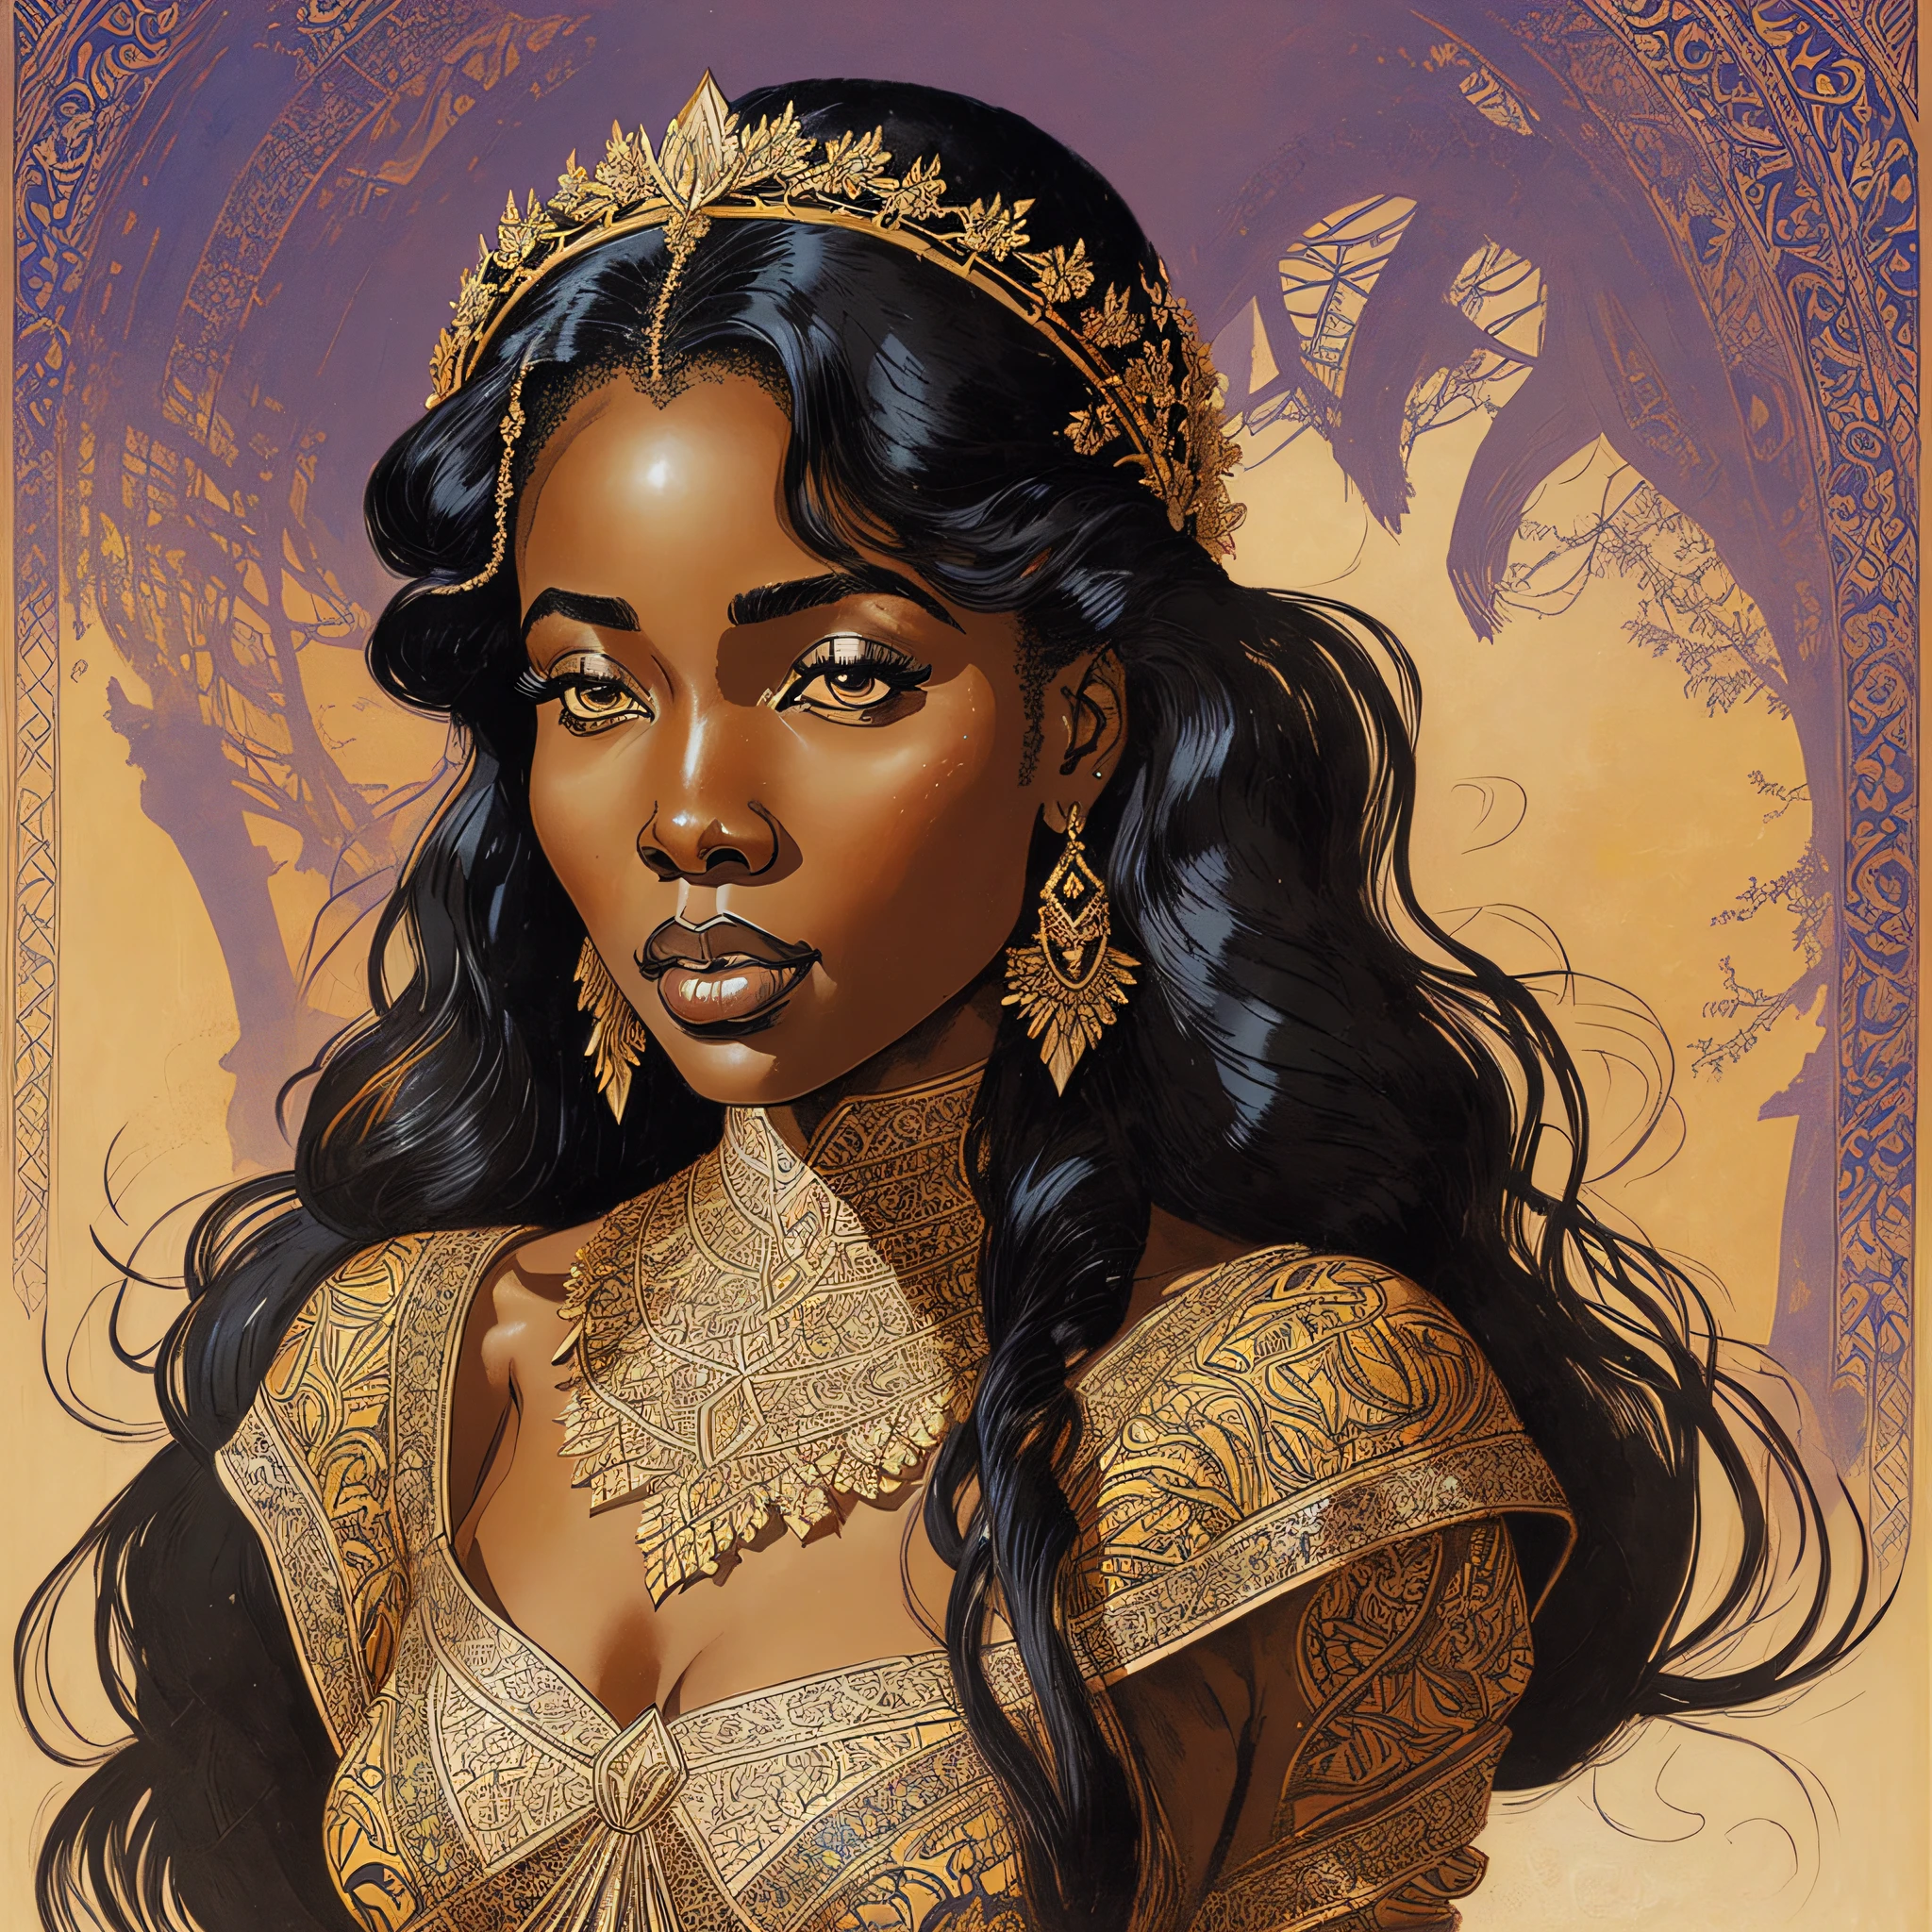 아름다운 젊은 아프리카 여왕, hea디 an디 shoul디ers portrait, 마일로 마나라, 2 0 0 0 빈티지 고딕 그림, 디 & 디, 공상, 뒤얽힌, 우아한, highly 디etaile디, 디igital painting, 아트스테이션, 컨셉 아트, 매끄러운, 날카로운 초점, --자동 --s2